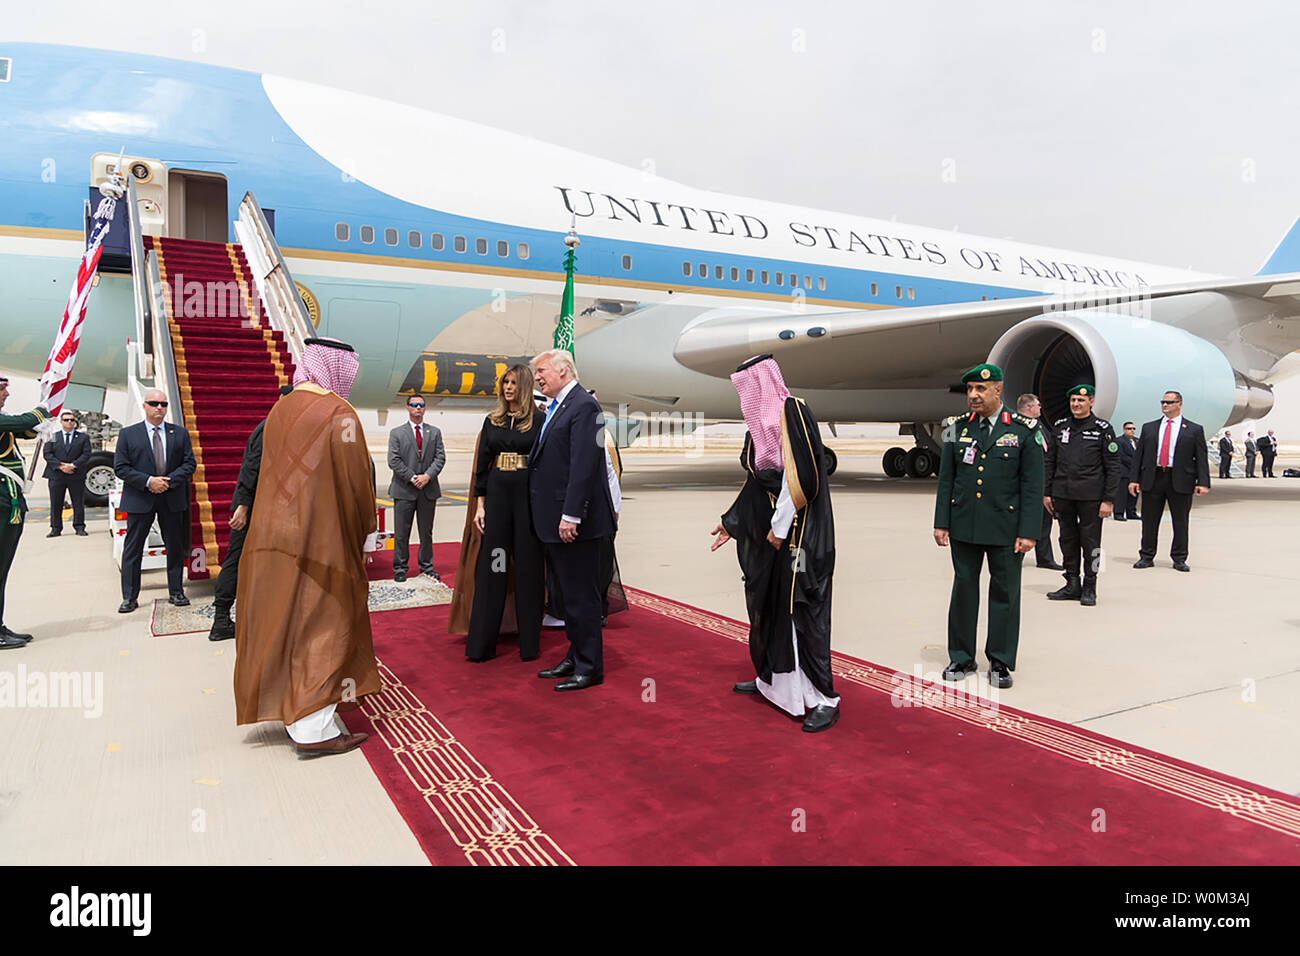 Präsident Donald Trump und First Lady Melania Trump sind von König Salman Bin Abdulaziz Al Saud, 20. Mai 2017 begrüßte, auf Ihre Anreise zum Flughafen King Khalid in Riad, Saudi-Arabien. Weiße Haus Foto von Shealah Craighead/UPI Stockfoto